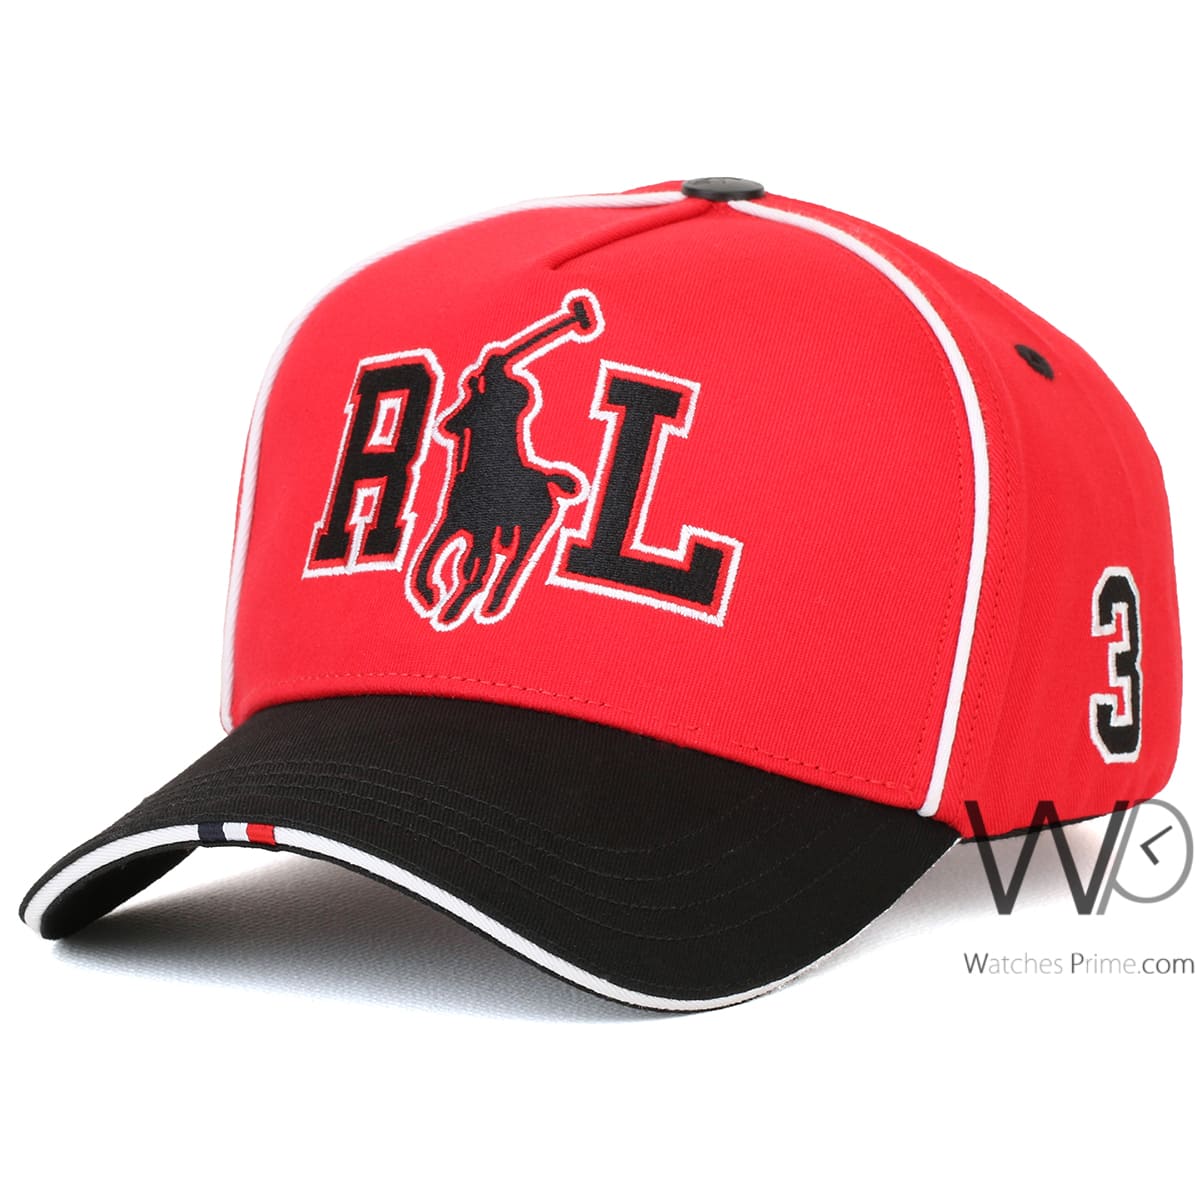 us-polo-ralph-lauren-baseball-red-black-cotton-cap-for-men